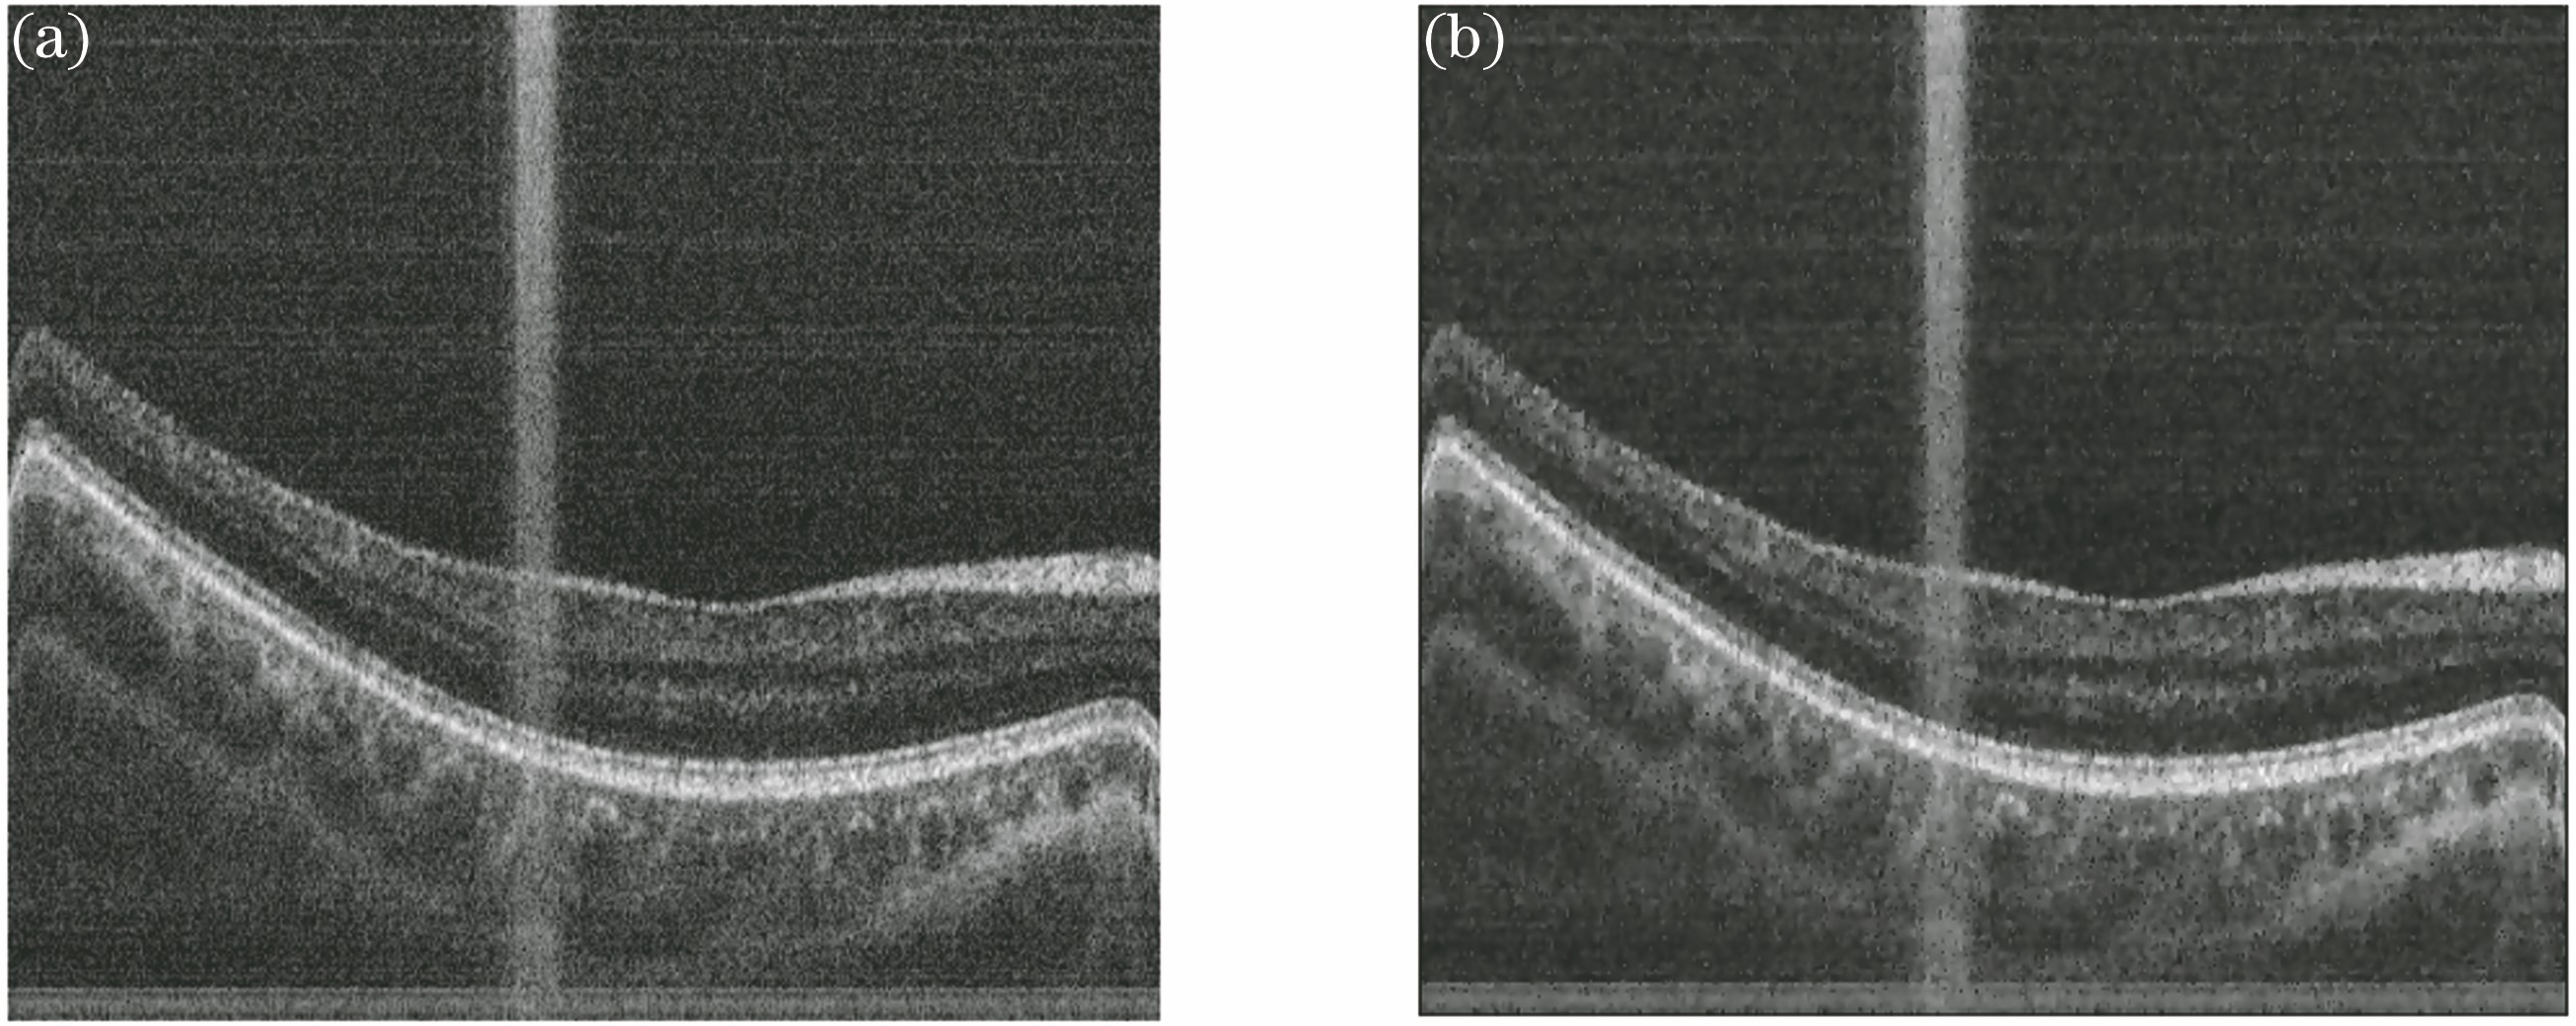 (a) Original OCT retinal image and (b) filtered image